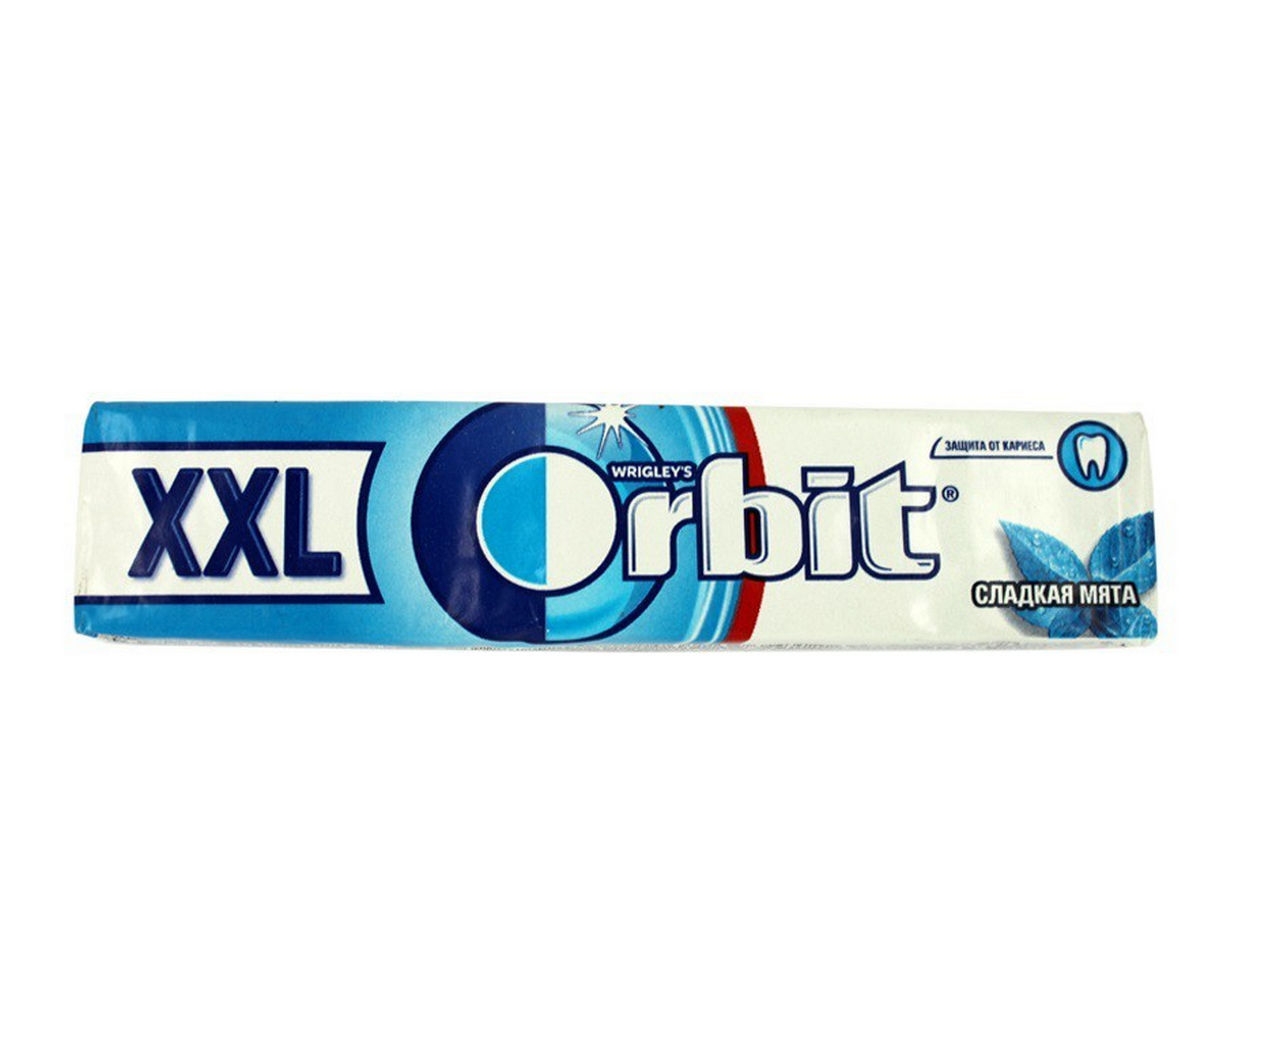 Сладкая мята. Жевательная резинка Orbit XXL сладкая мята, 20,4 г. Резинка жевательная Orbit (орбит) сладкая мята. Orbit сладкая мята XXL 20.4Г. Жвачка орбит ххл мята.